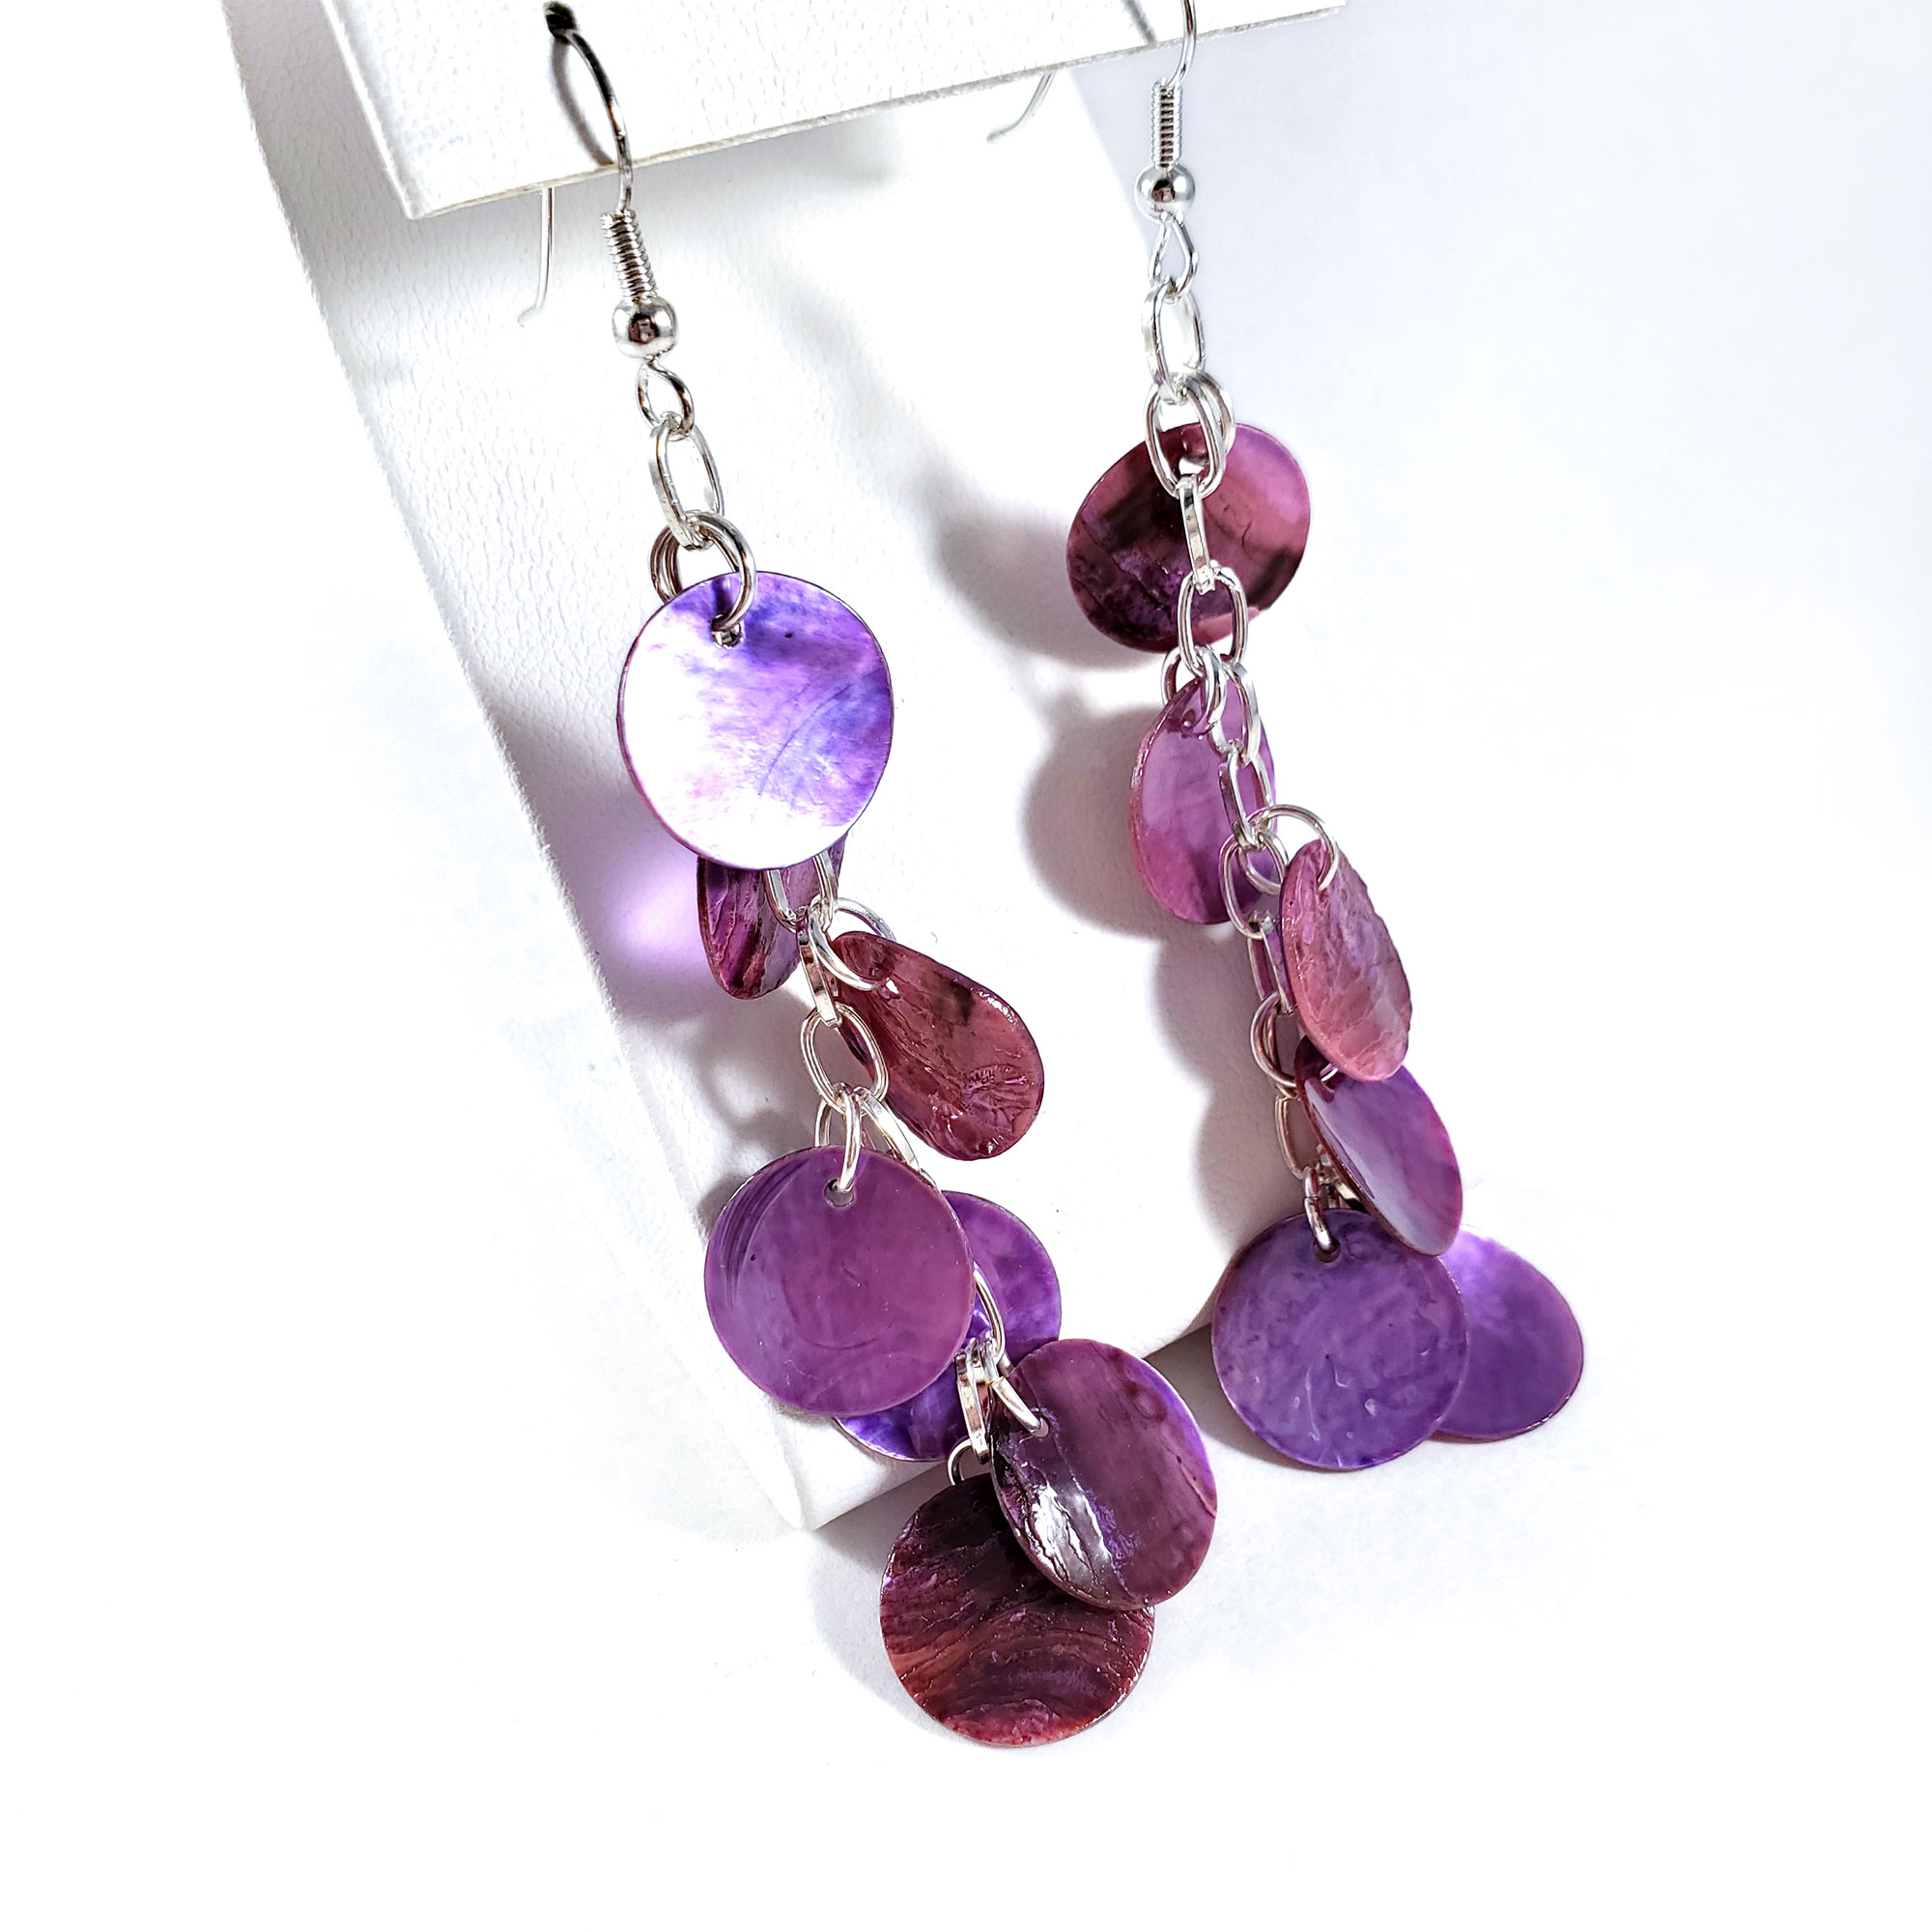 Dragon Scale Earrings in Purple by Wilde Designs